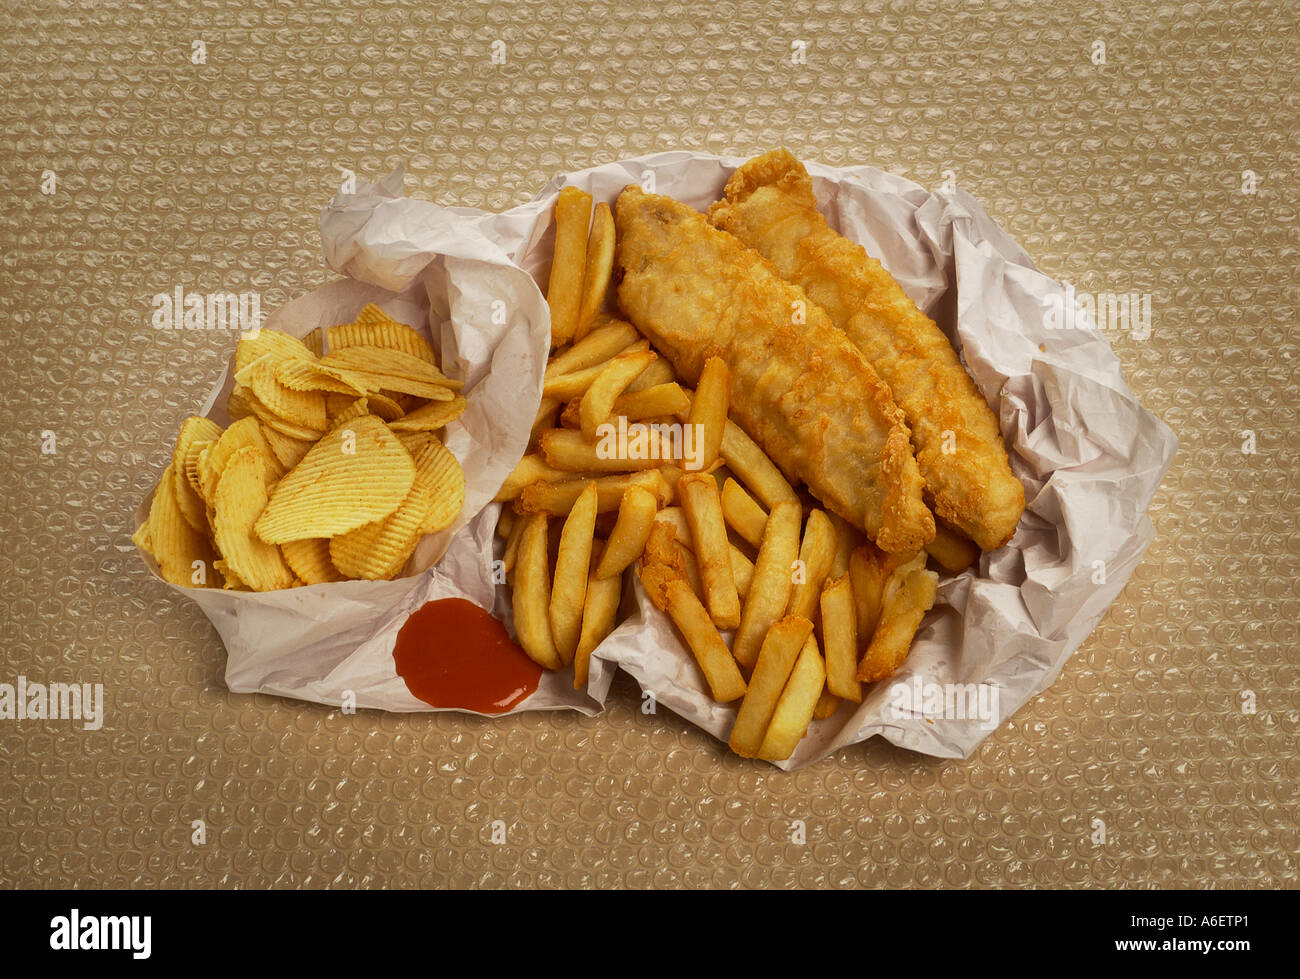 Scaglie di pesce avvolto nella carta Esempio di alta cibo grasso per essere consumato con moderazione Foto Stock